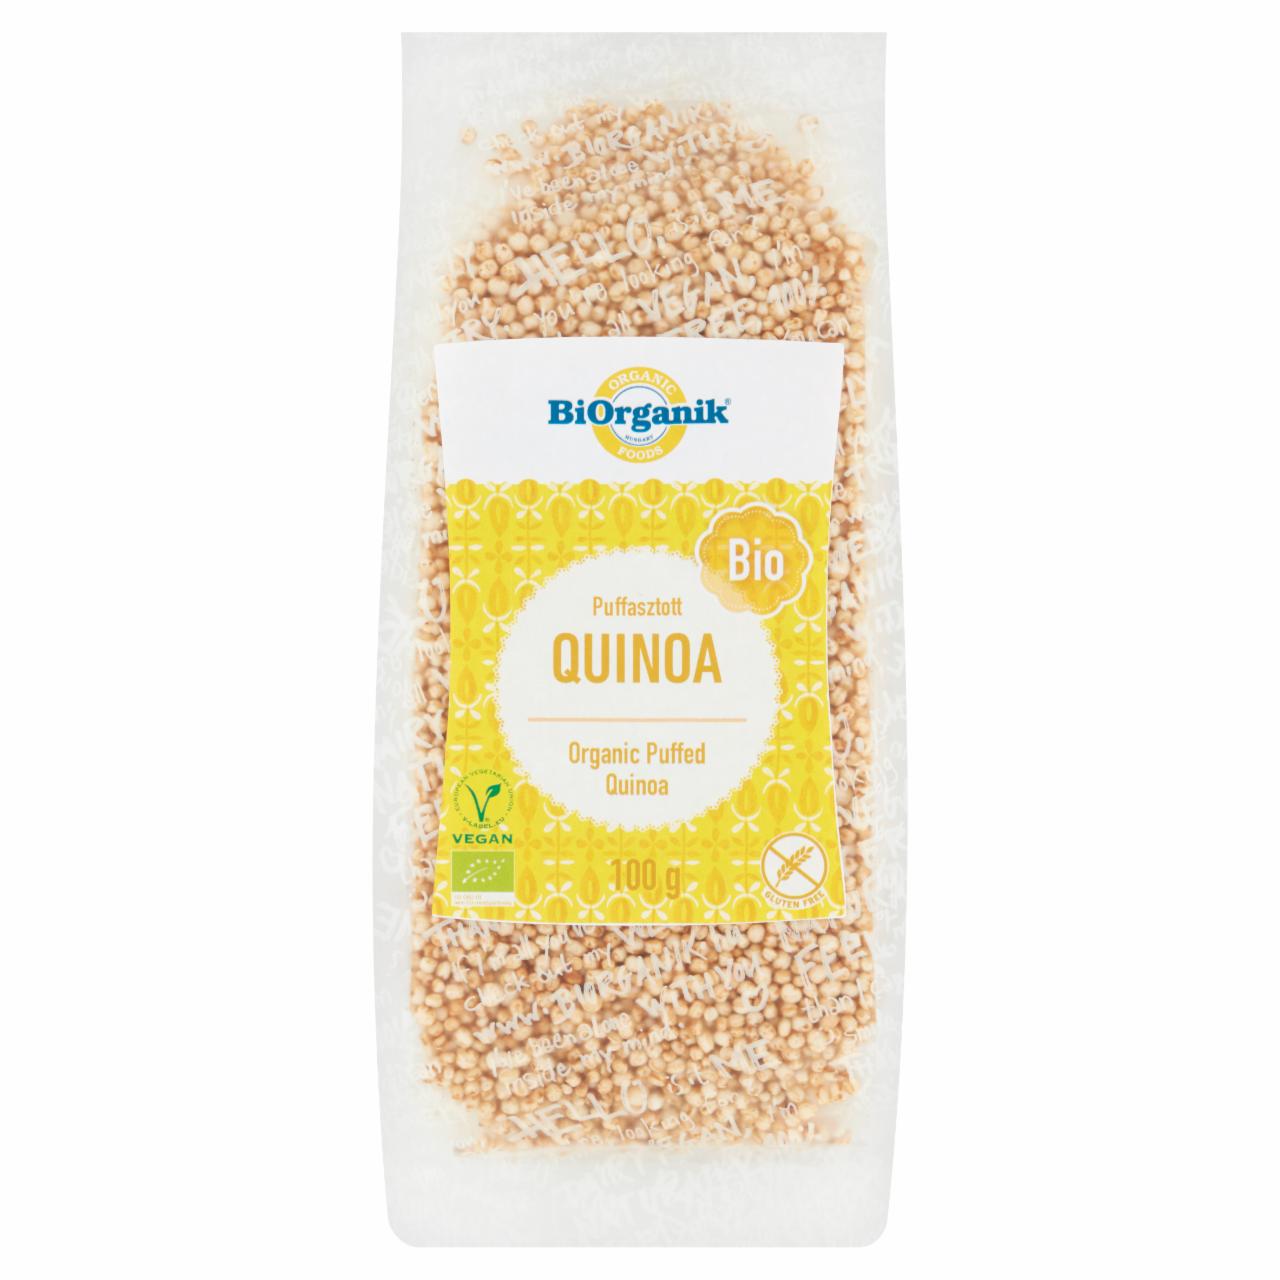 Képek - BiOrganik BIO puffasztott quinoa 100 g